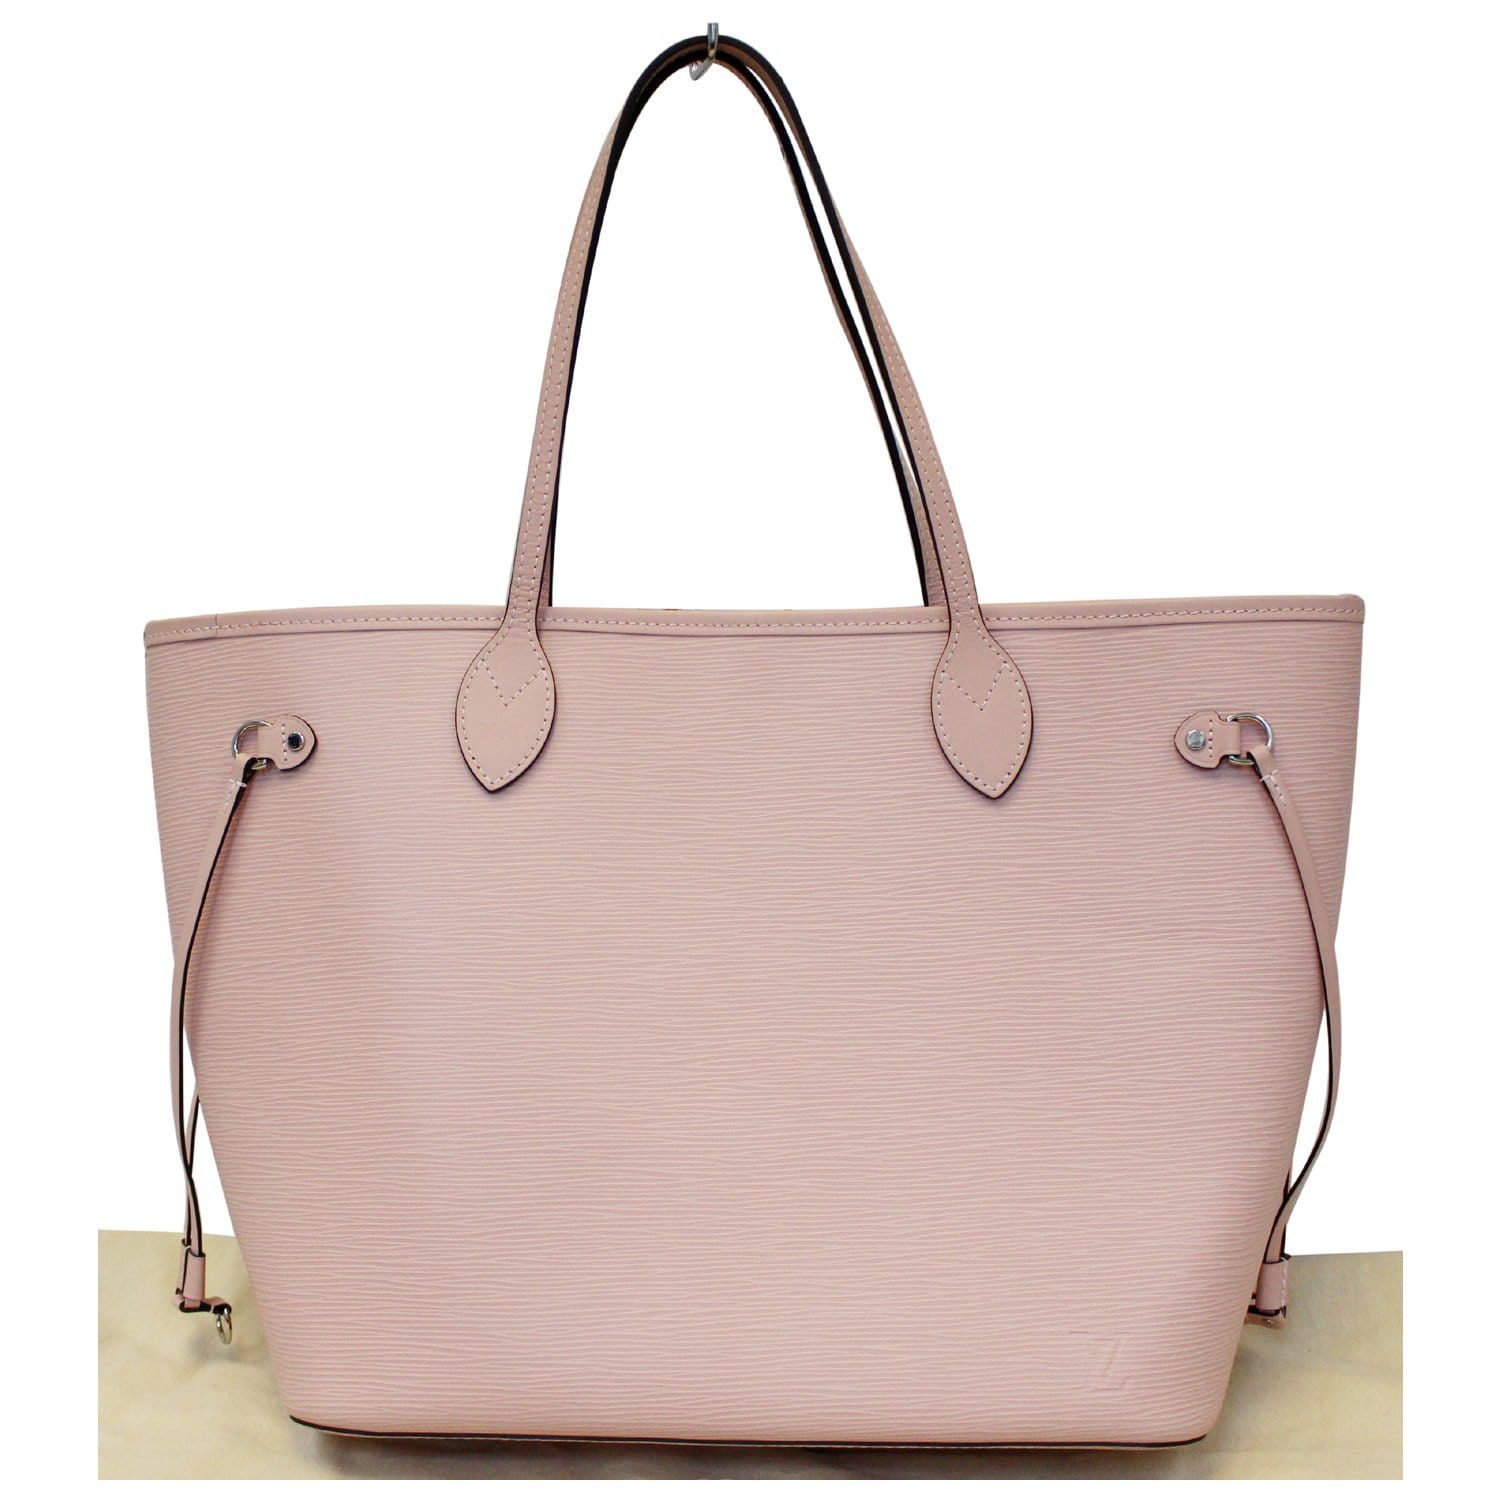 CHICECO Handbag Base Shaper for LV Neverfull mm Speedy 30, Vegan Leather and Felt